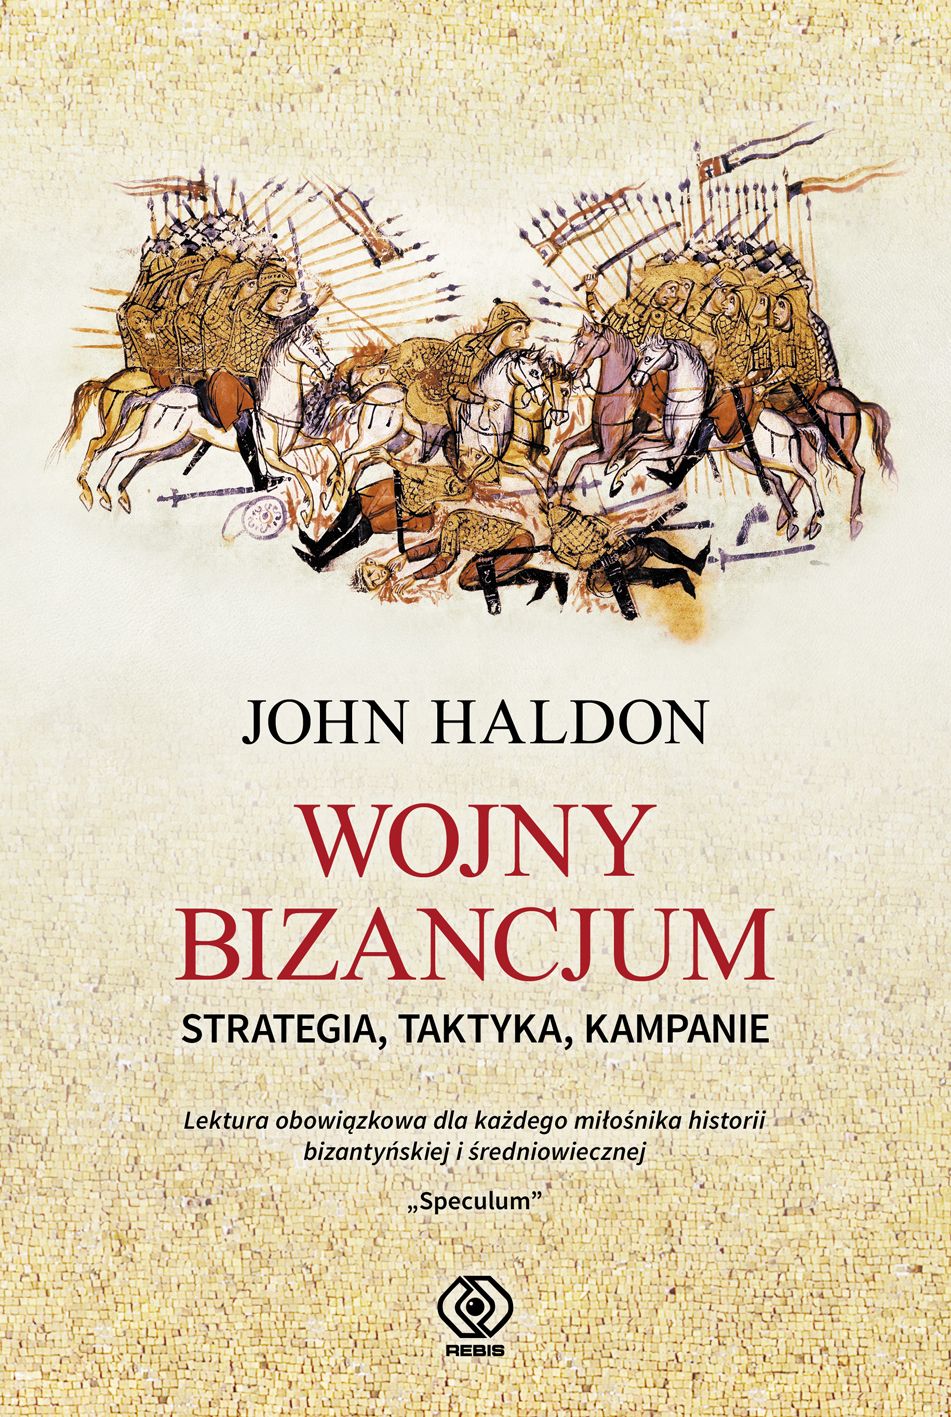 "Wojny Bizancjum. Stategia, Taktyka, Kampanie", John Haldon,